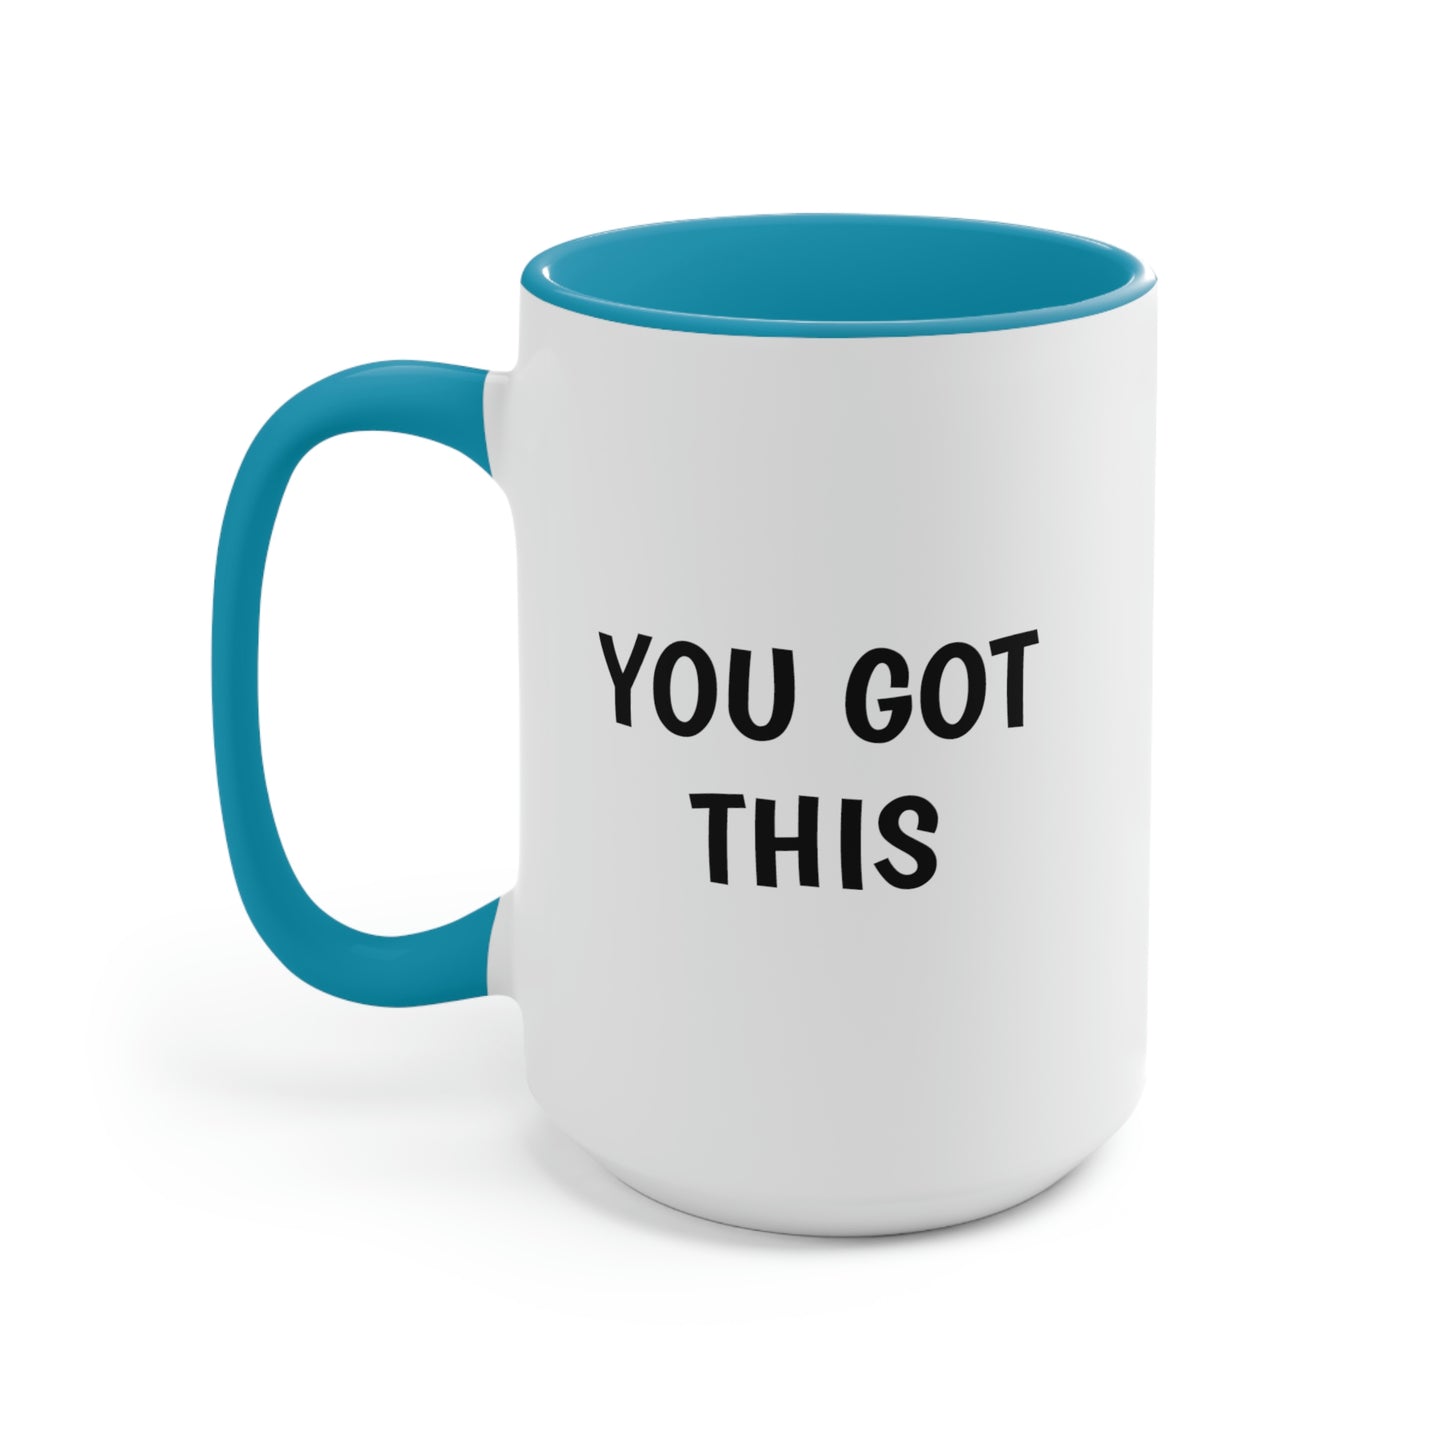 You Got This, Two-Tone Coffee Mugs, 15oz